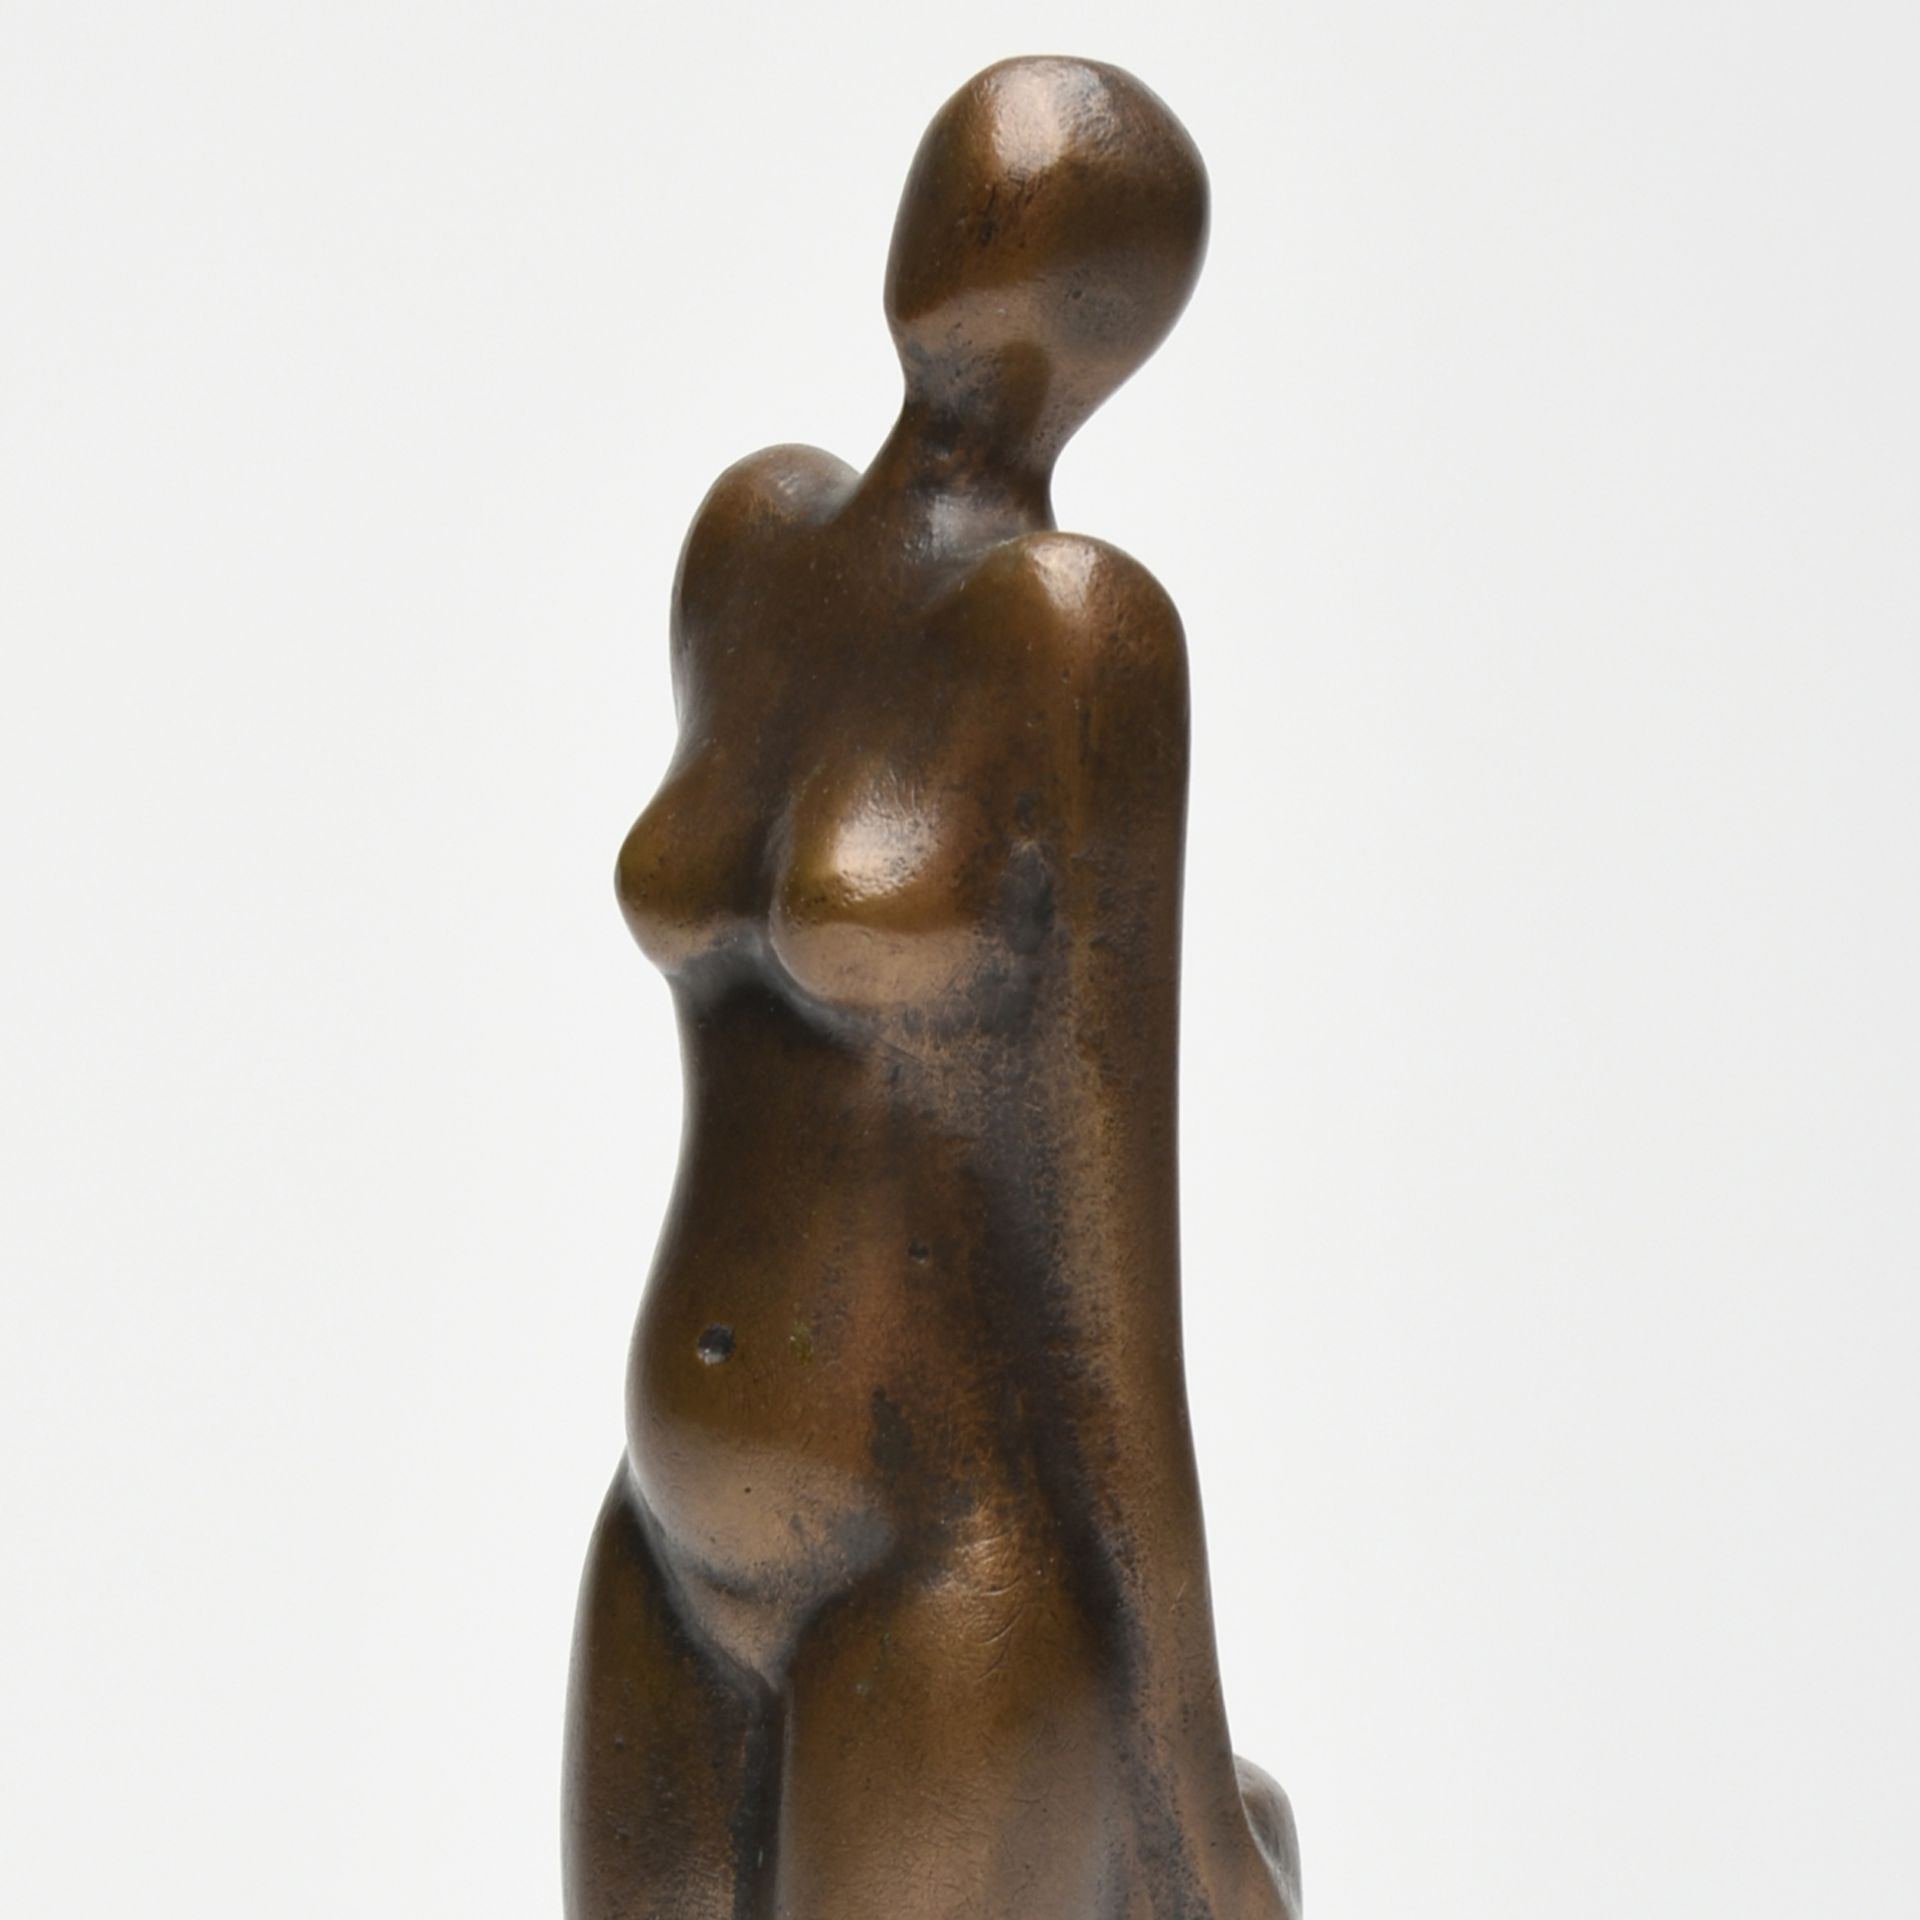 Stehende Bronze, braun patiniert, weiblicher Akt an Säule anlehnend, leicht abstrahierte